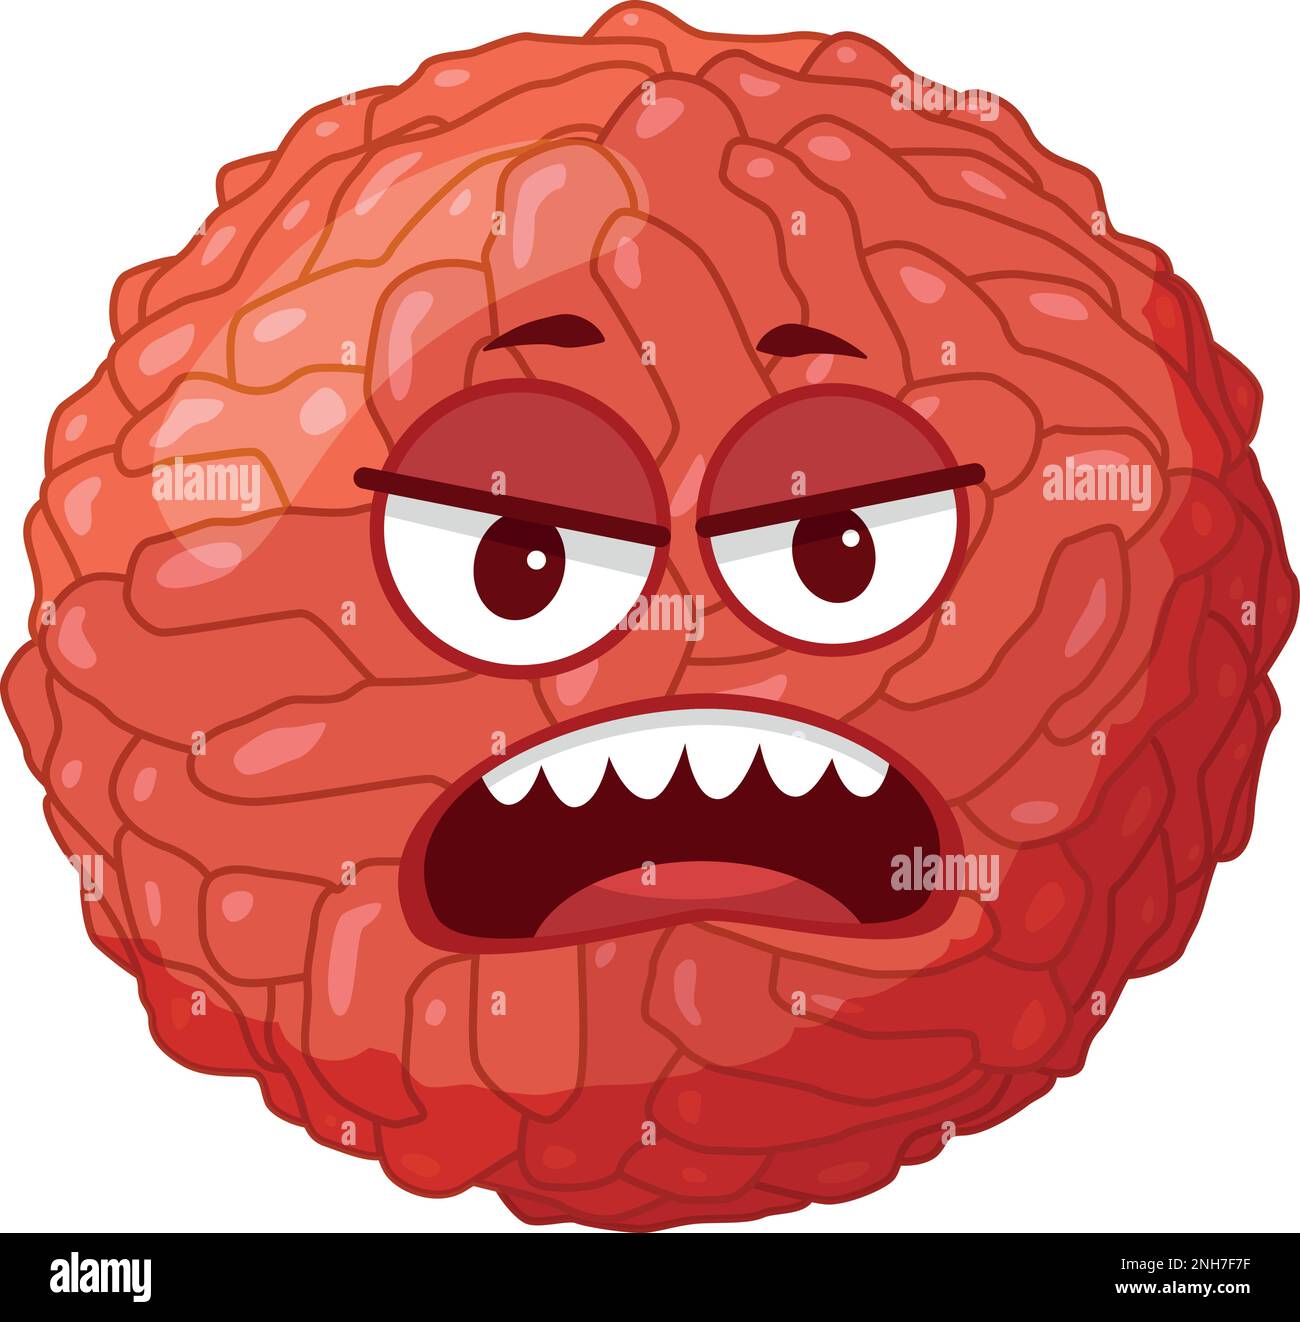 Illustrazione vettoriale di un virus Zika in stile cartoon isolato su sfondo bianco Illustrazione Vettoriale